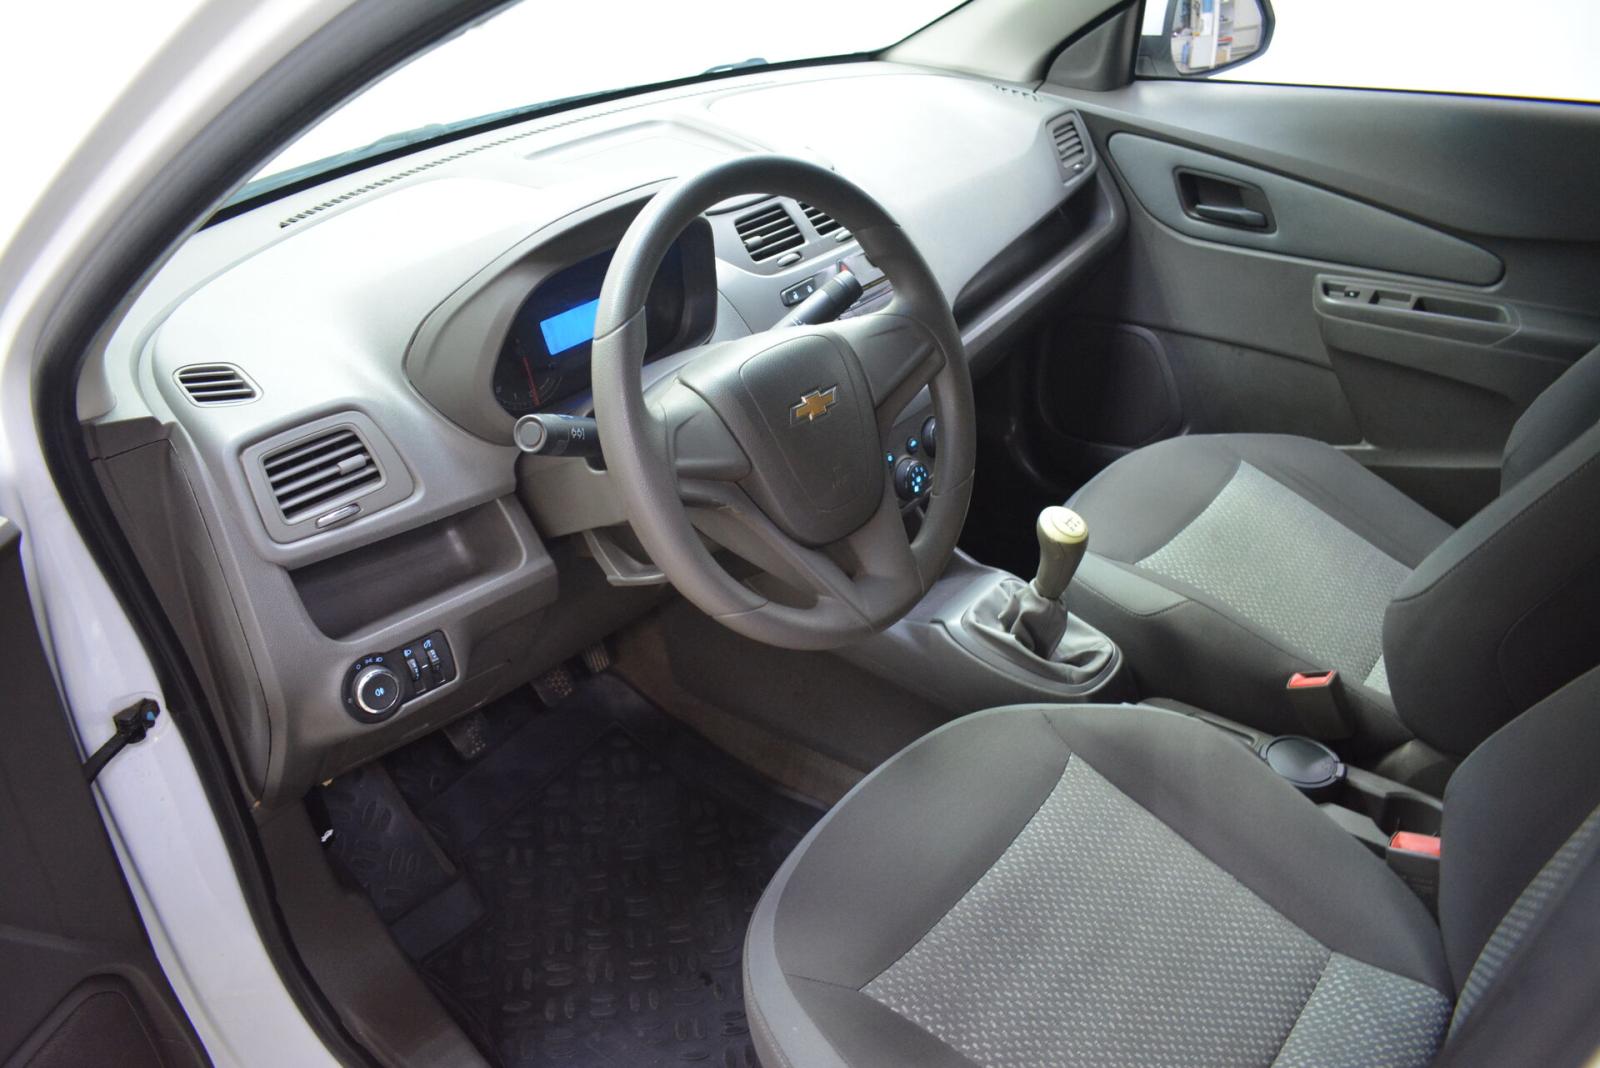 Chevrolet Cobalt, II 2013г.